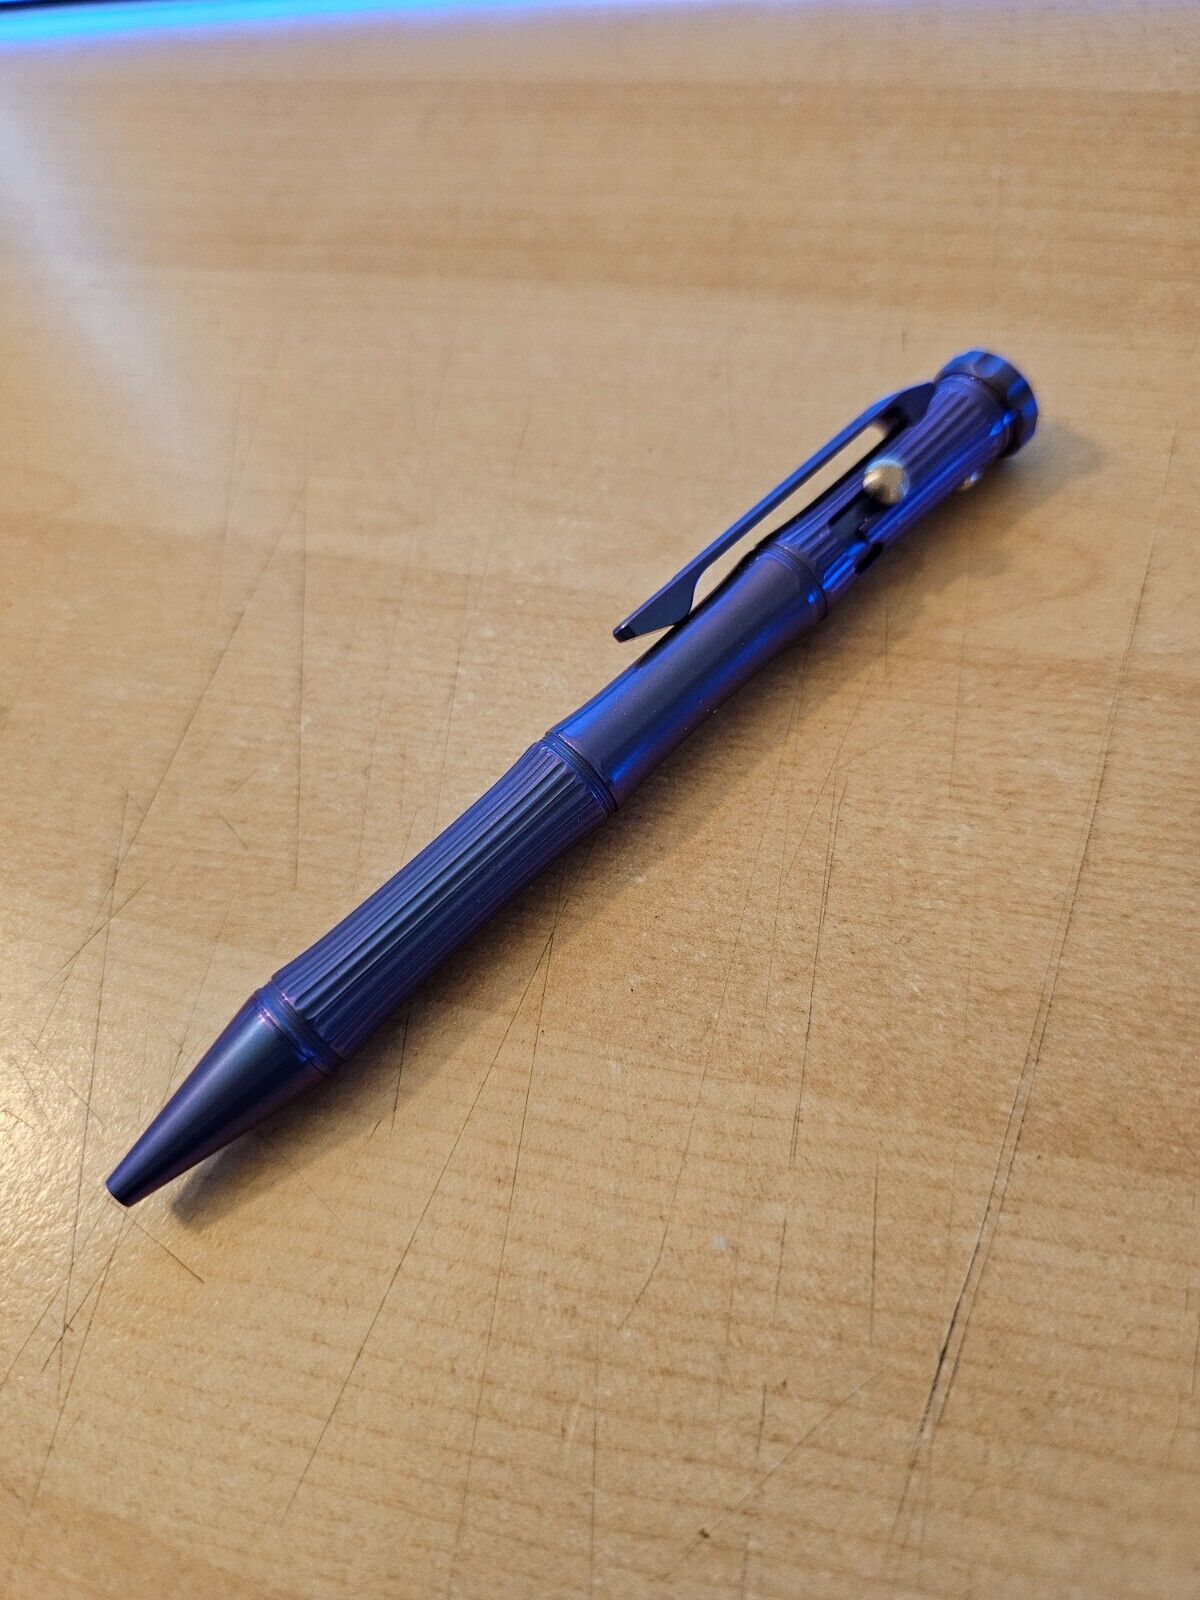 TISUR EDC Pen -Titanium Metal Bolt-Action Pen